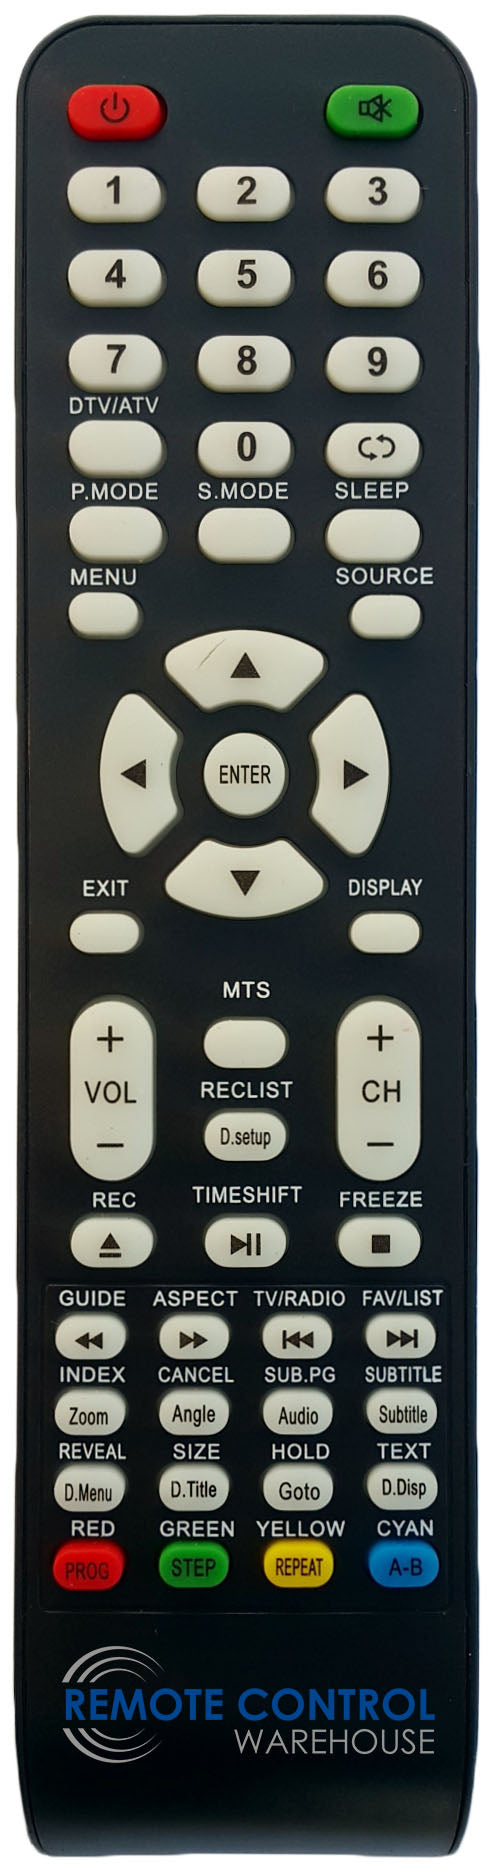 REPLACEMENT GVA REMOTE CONTROL FOR GVA G24TDC12V15 DVD COMBO TV - Remote Control Warehouse